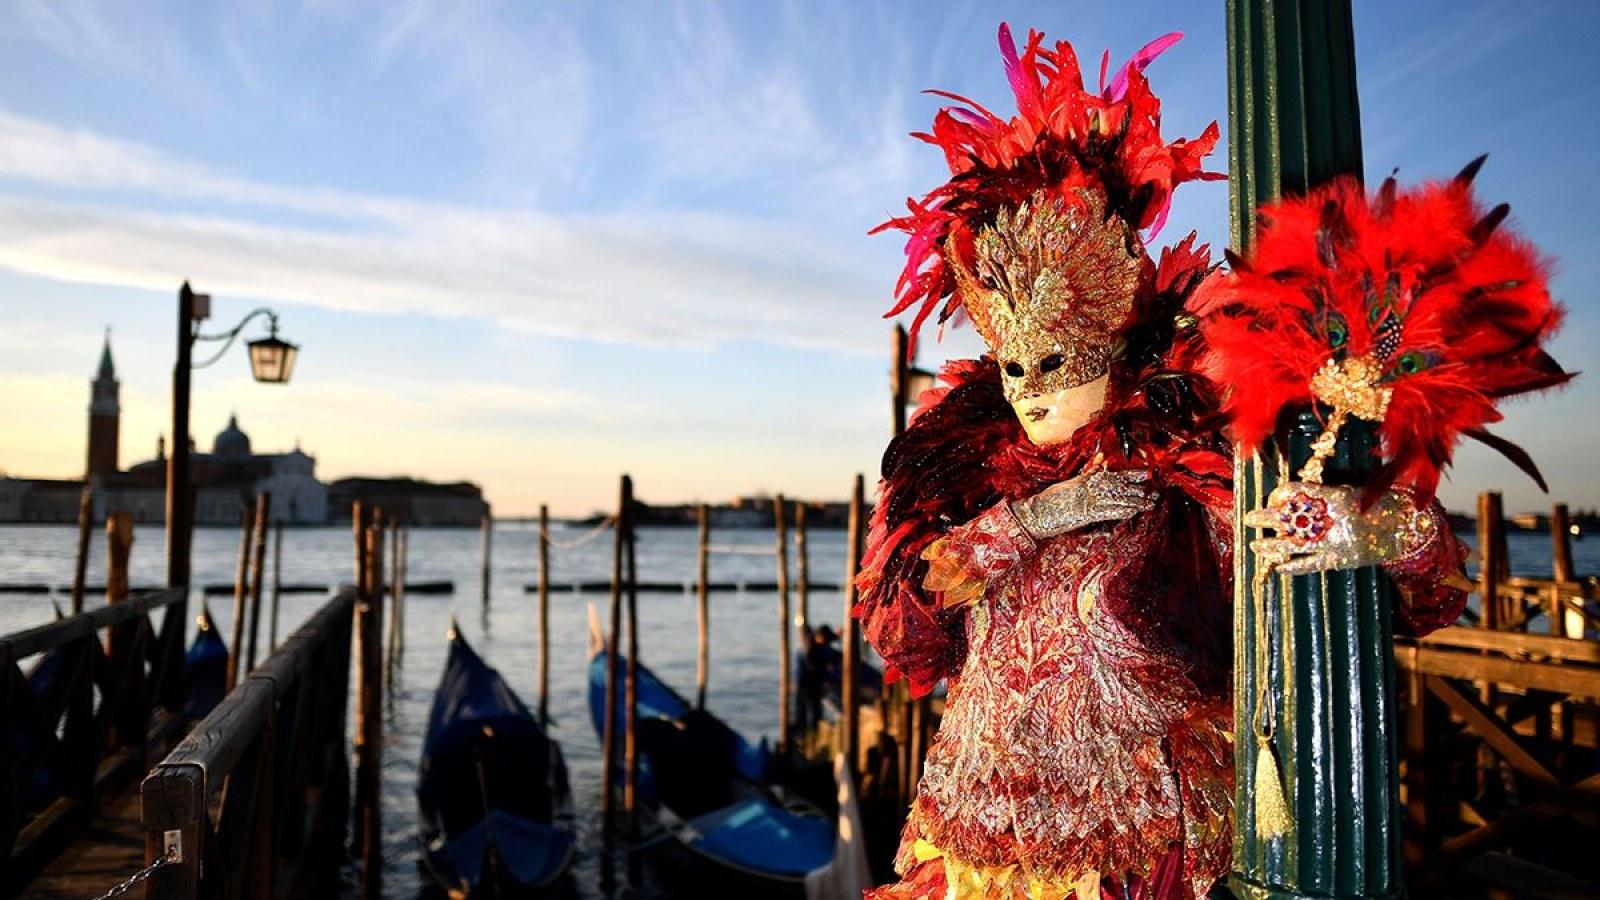 Carnival in Venice 2019: Great Photo of Masked Revelers in